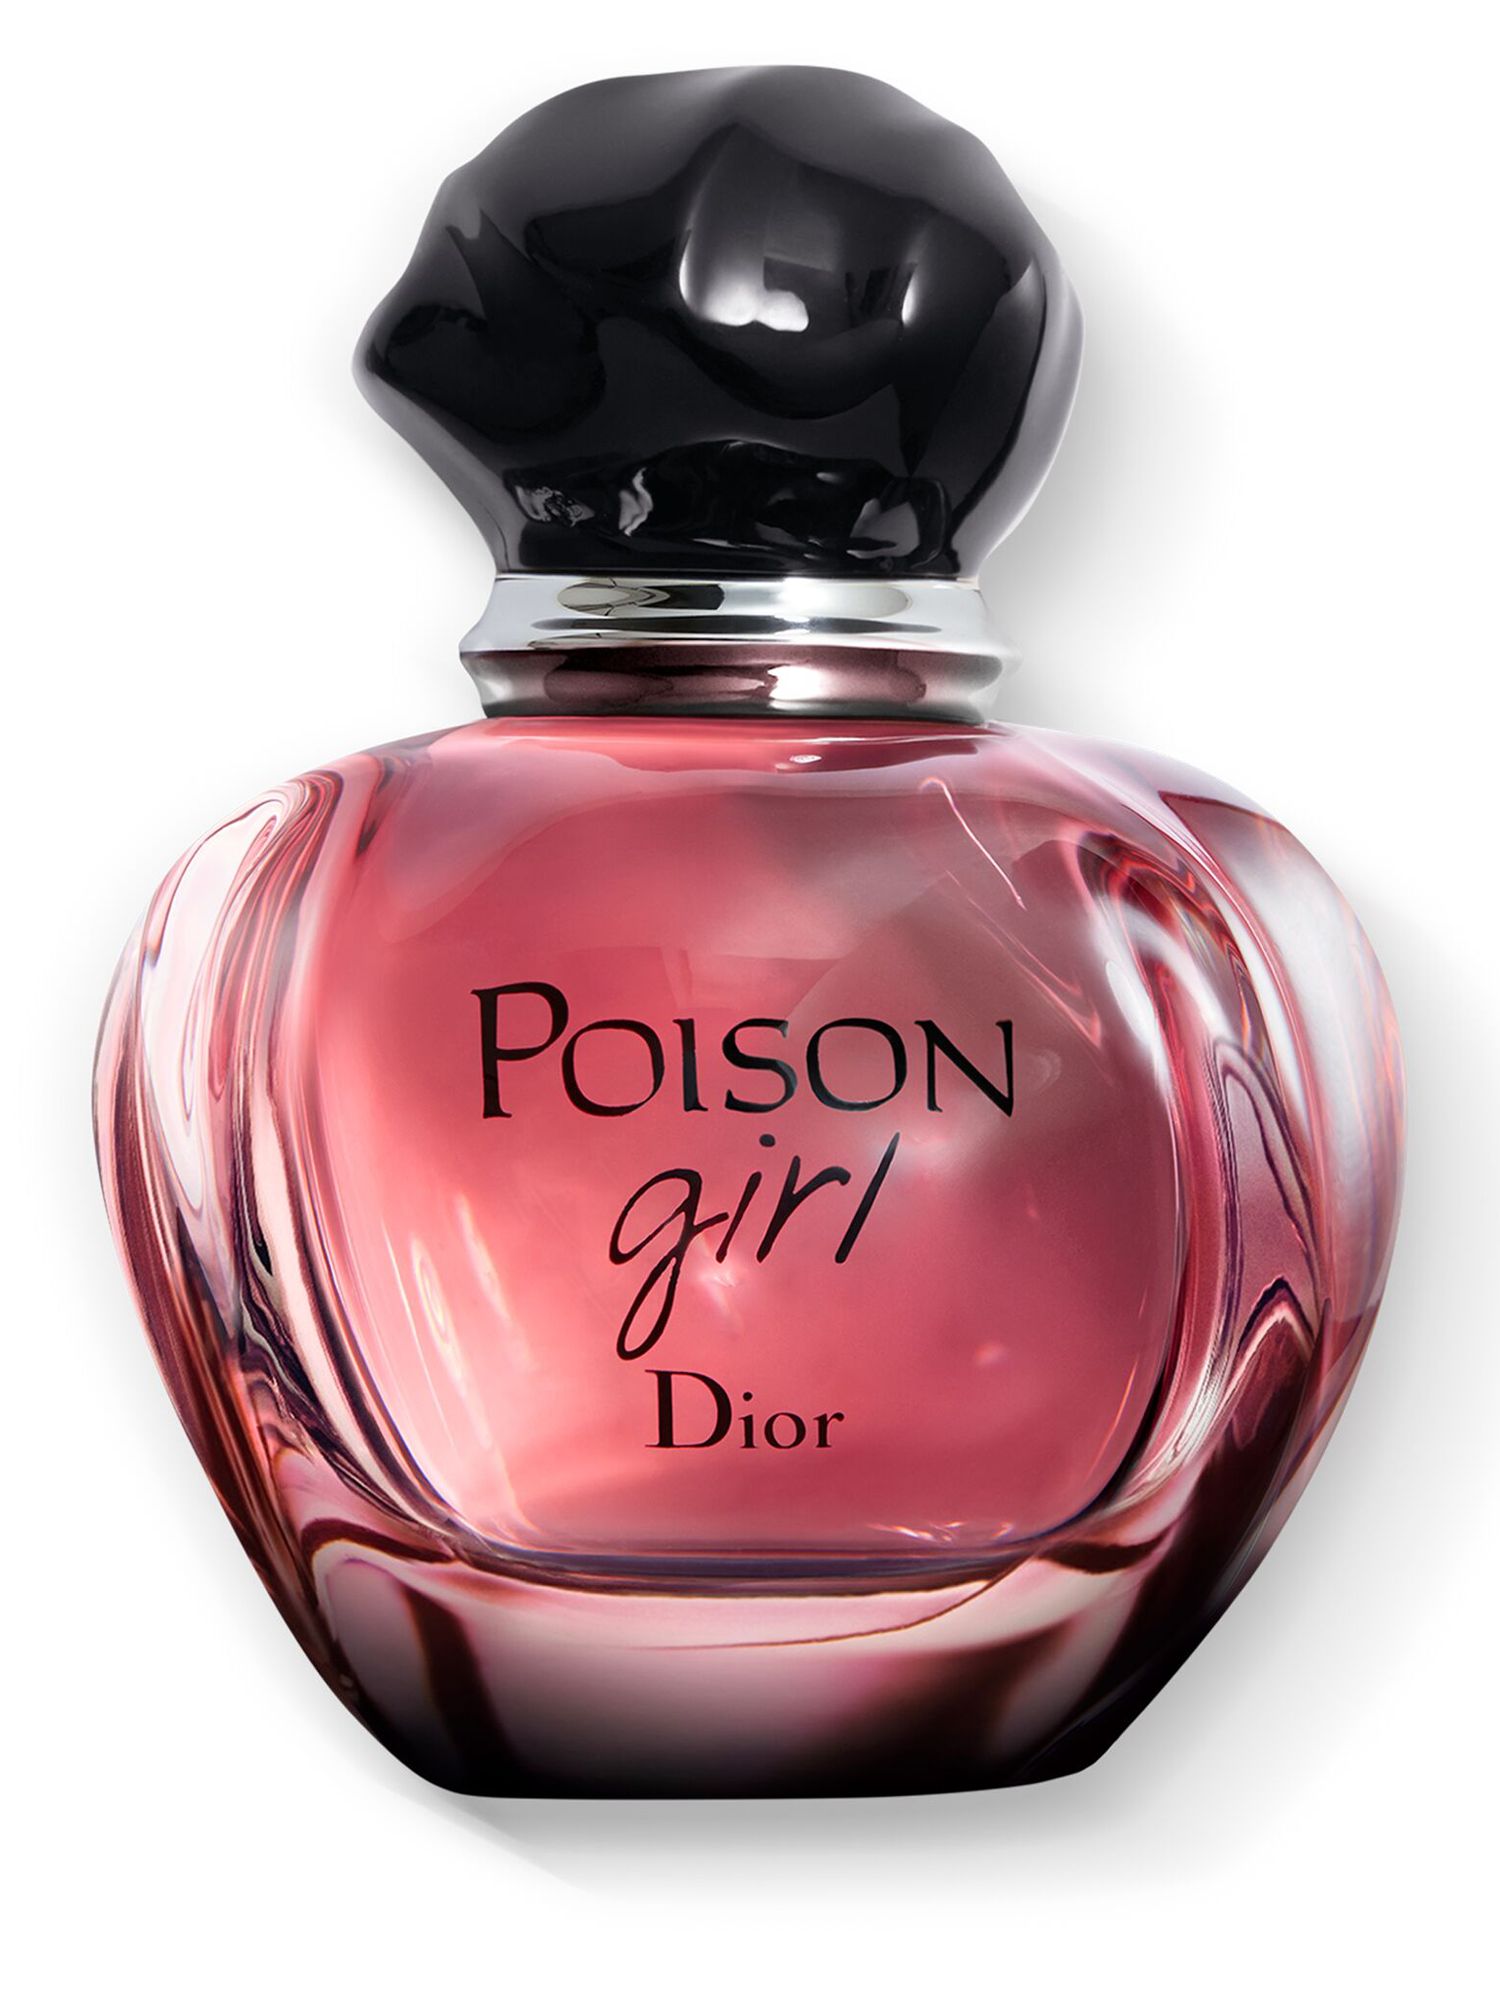 DIOR Poison Girl Eau de Parfum, 30ml at John Lewis & Partners